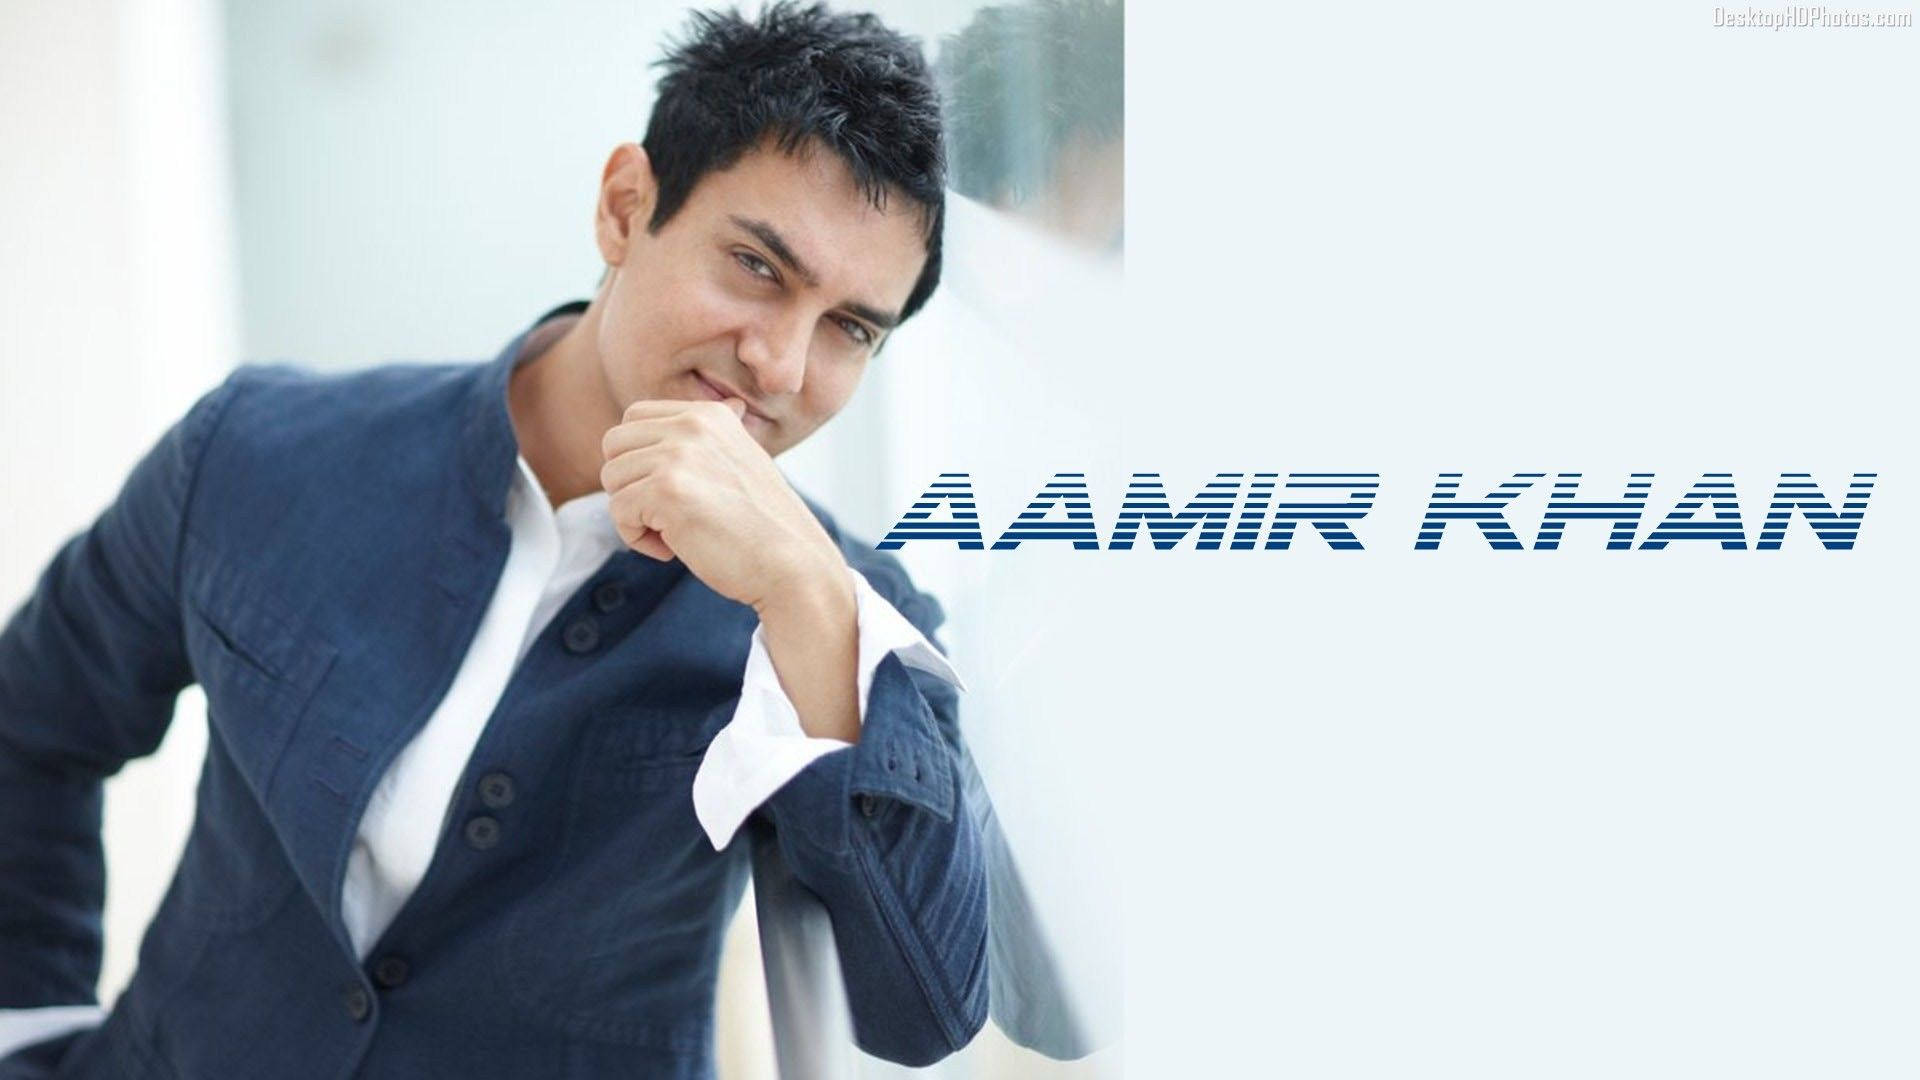 International Star Aamir Khan Background